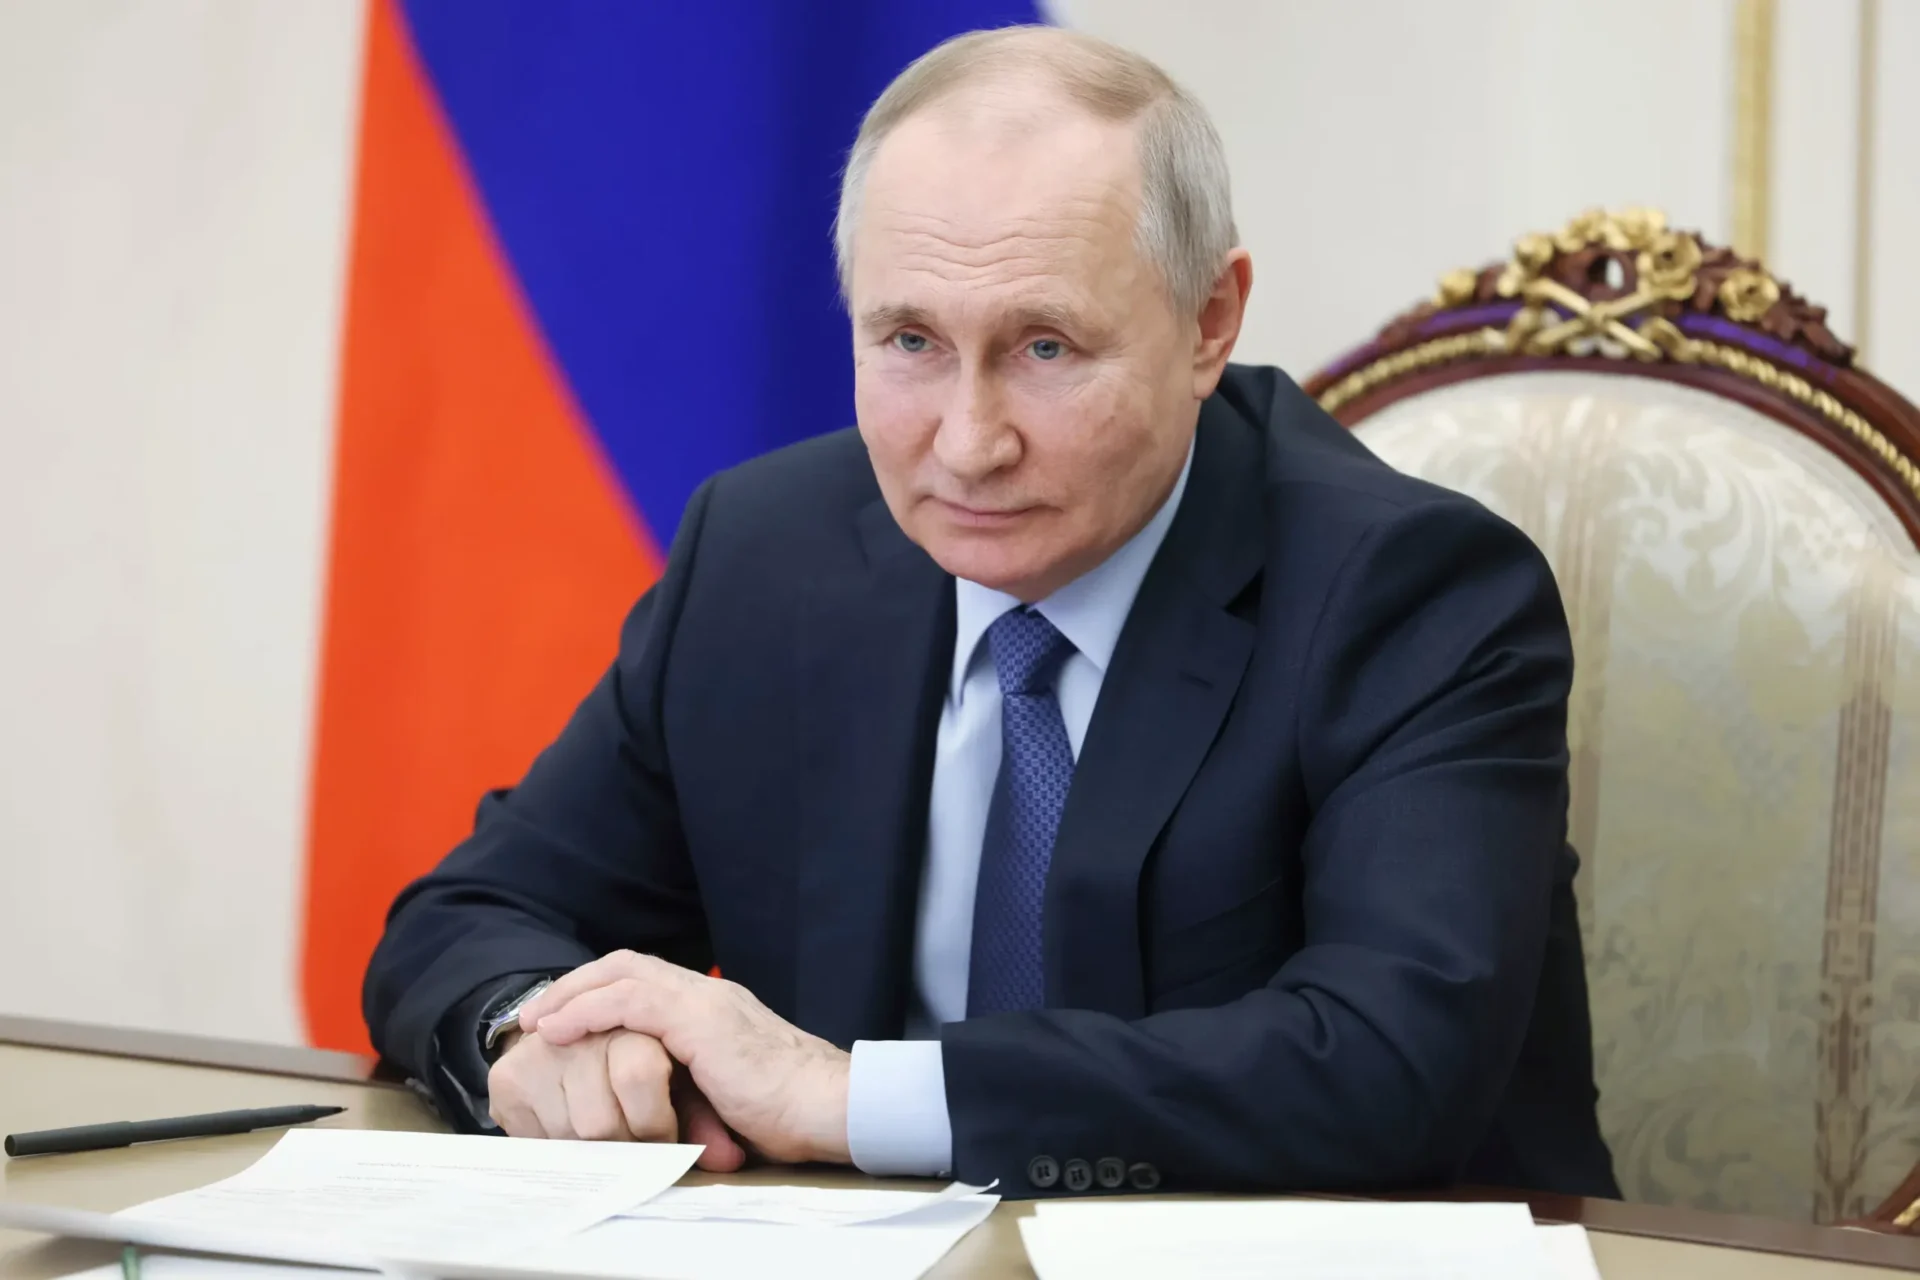 CPI emite orden de arresto contra Putin por crímenes de guerra en Ucrania